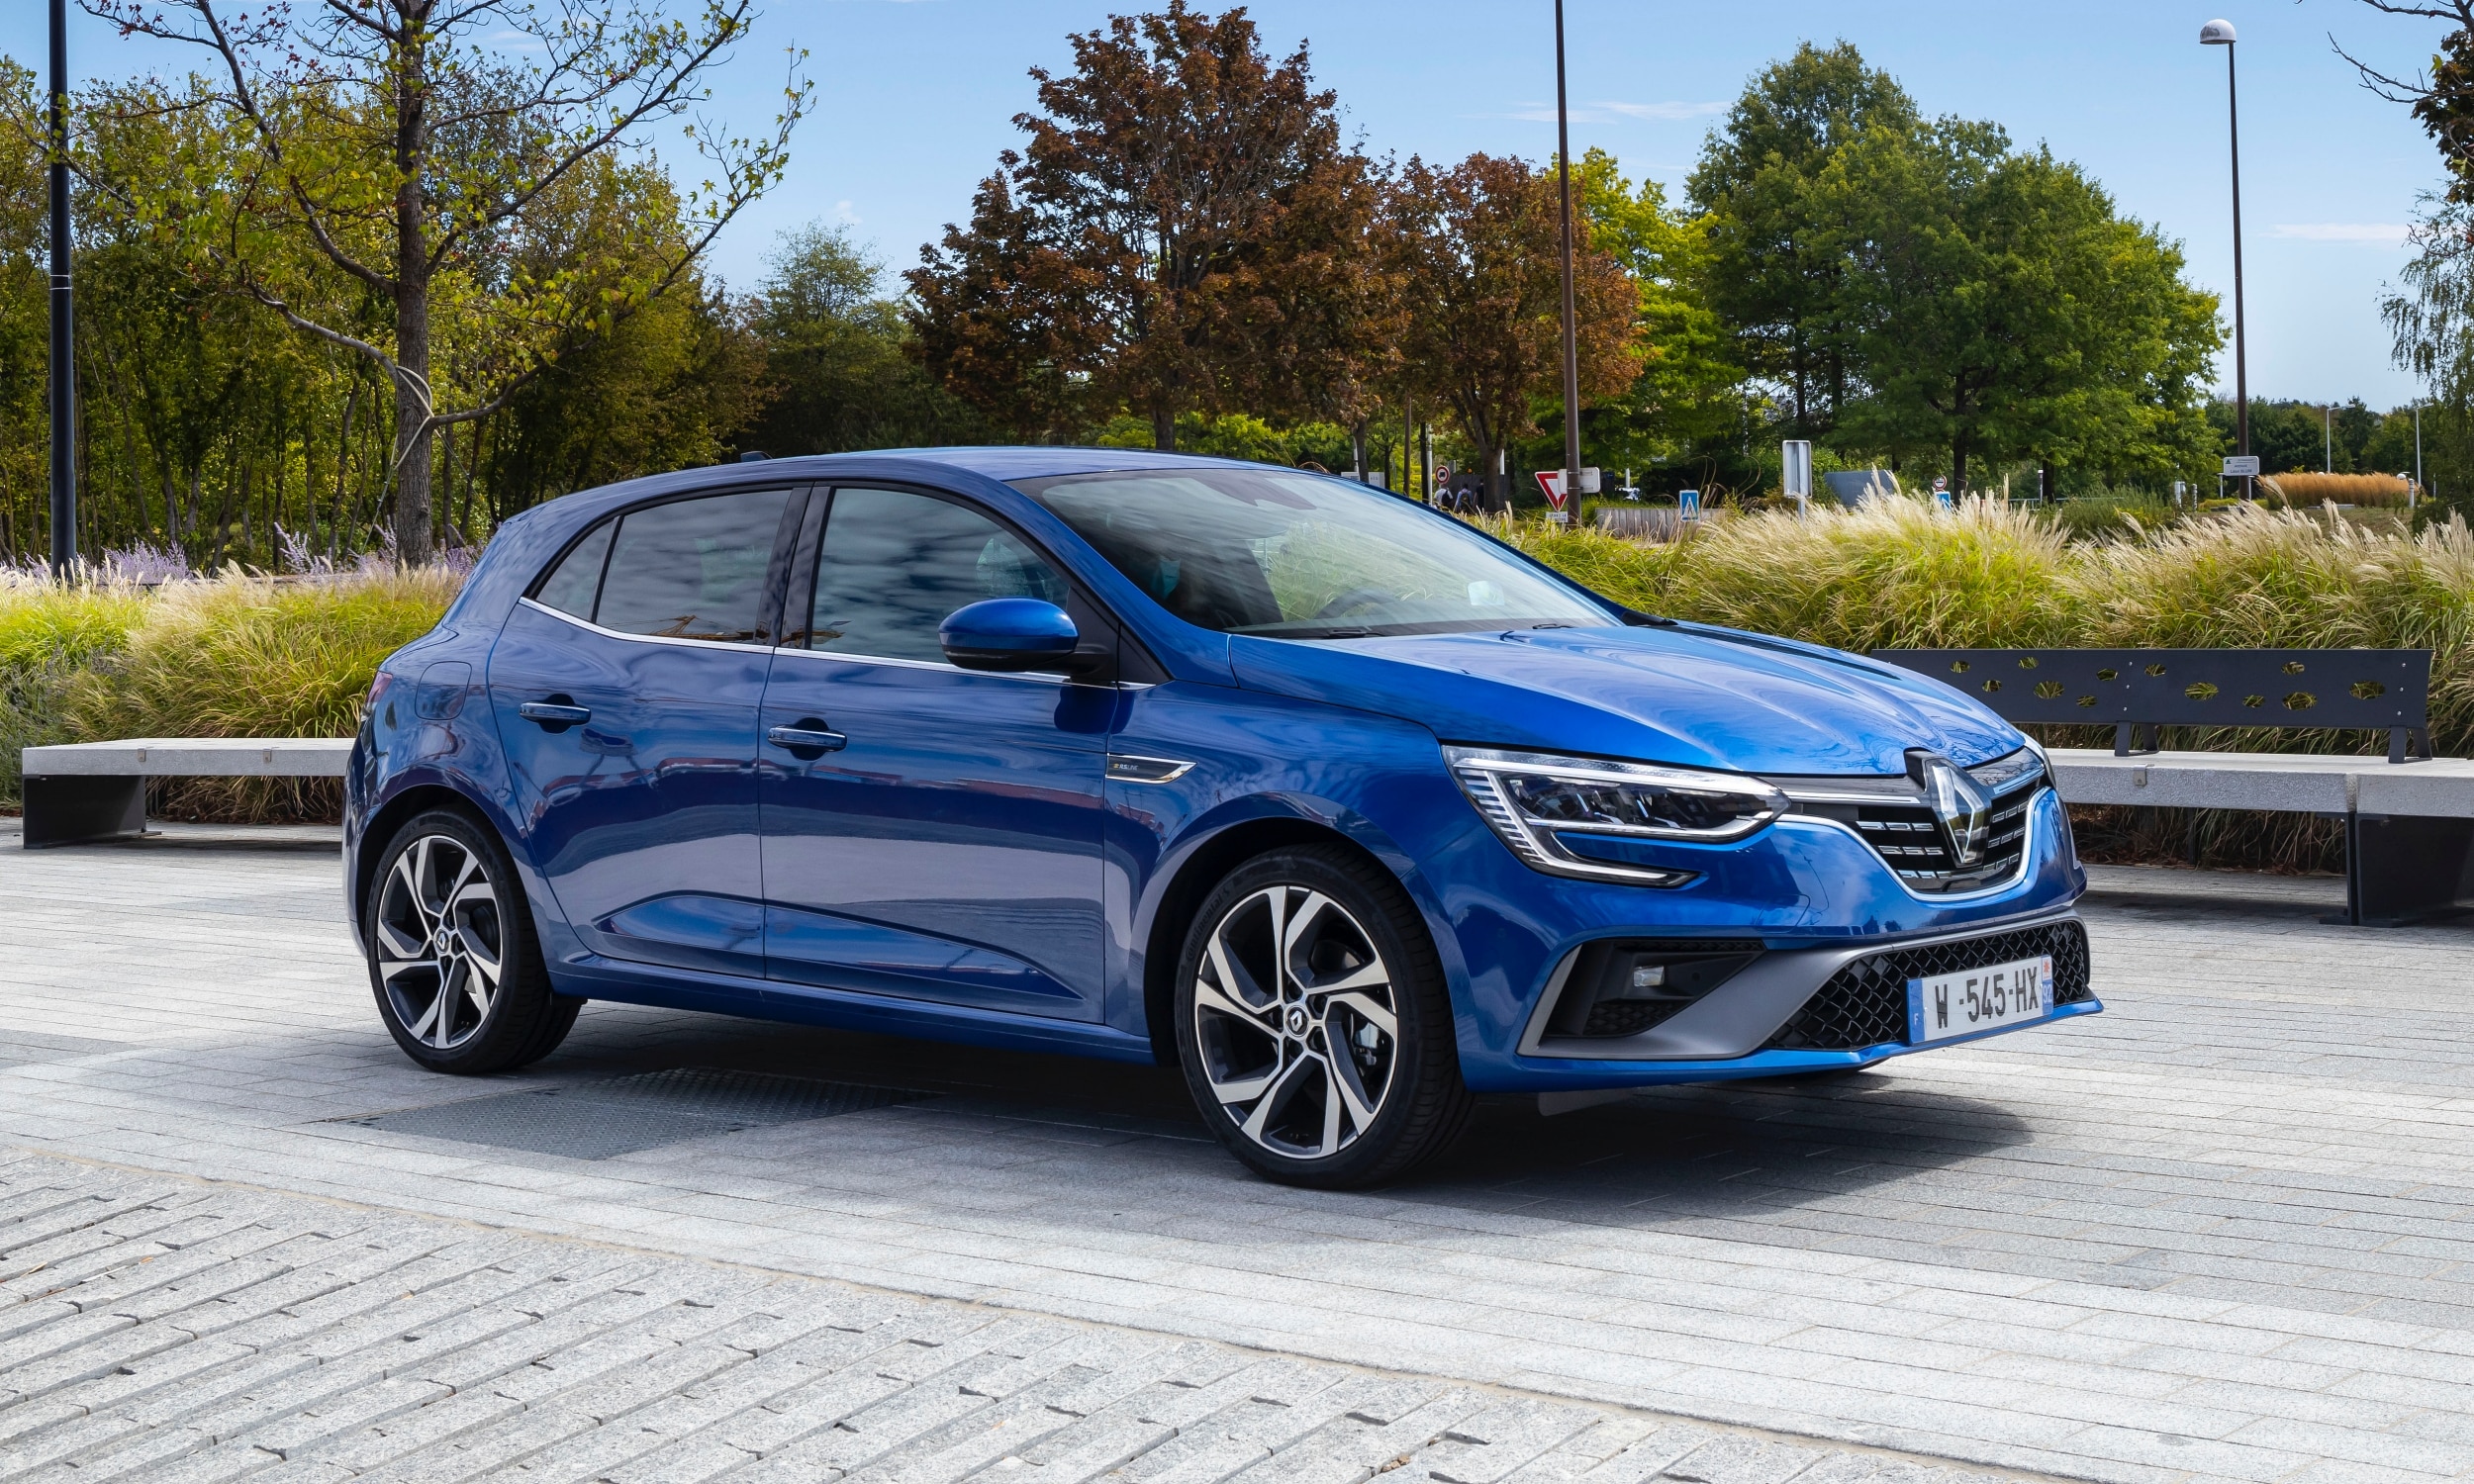 Capacidad de gasolina en Renault Mégane: ¿Cuántos litros caben?